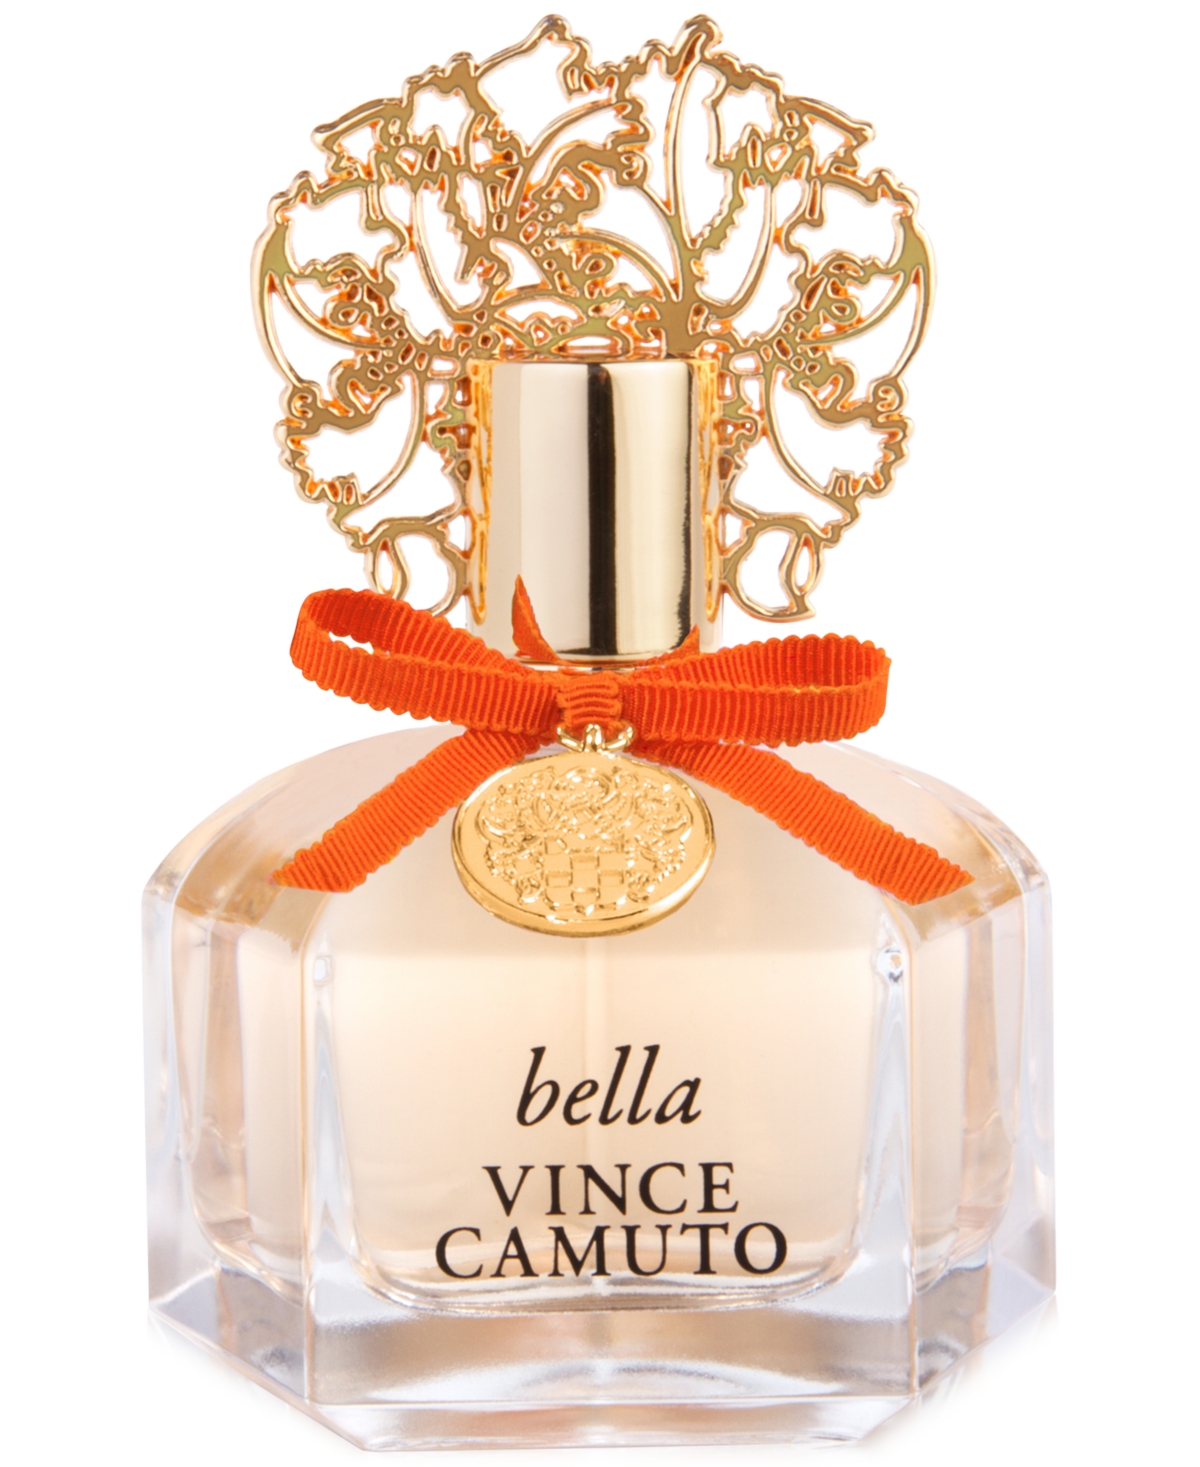 Vince Camuto Amore 1.7 oz Eau de Parfum 3 Piece Gift Set for Women